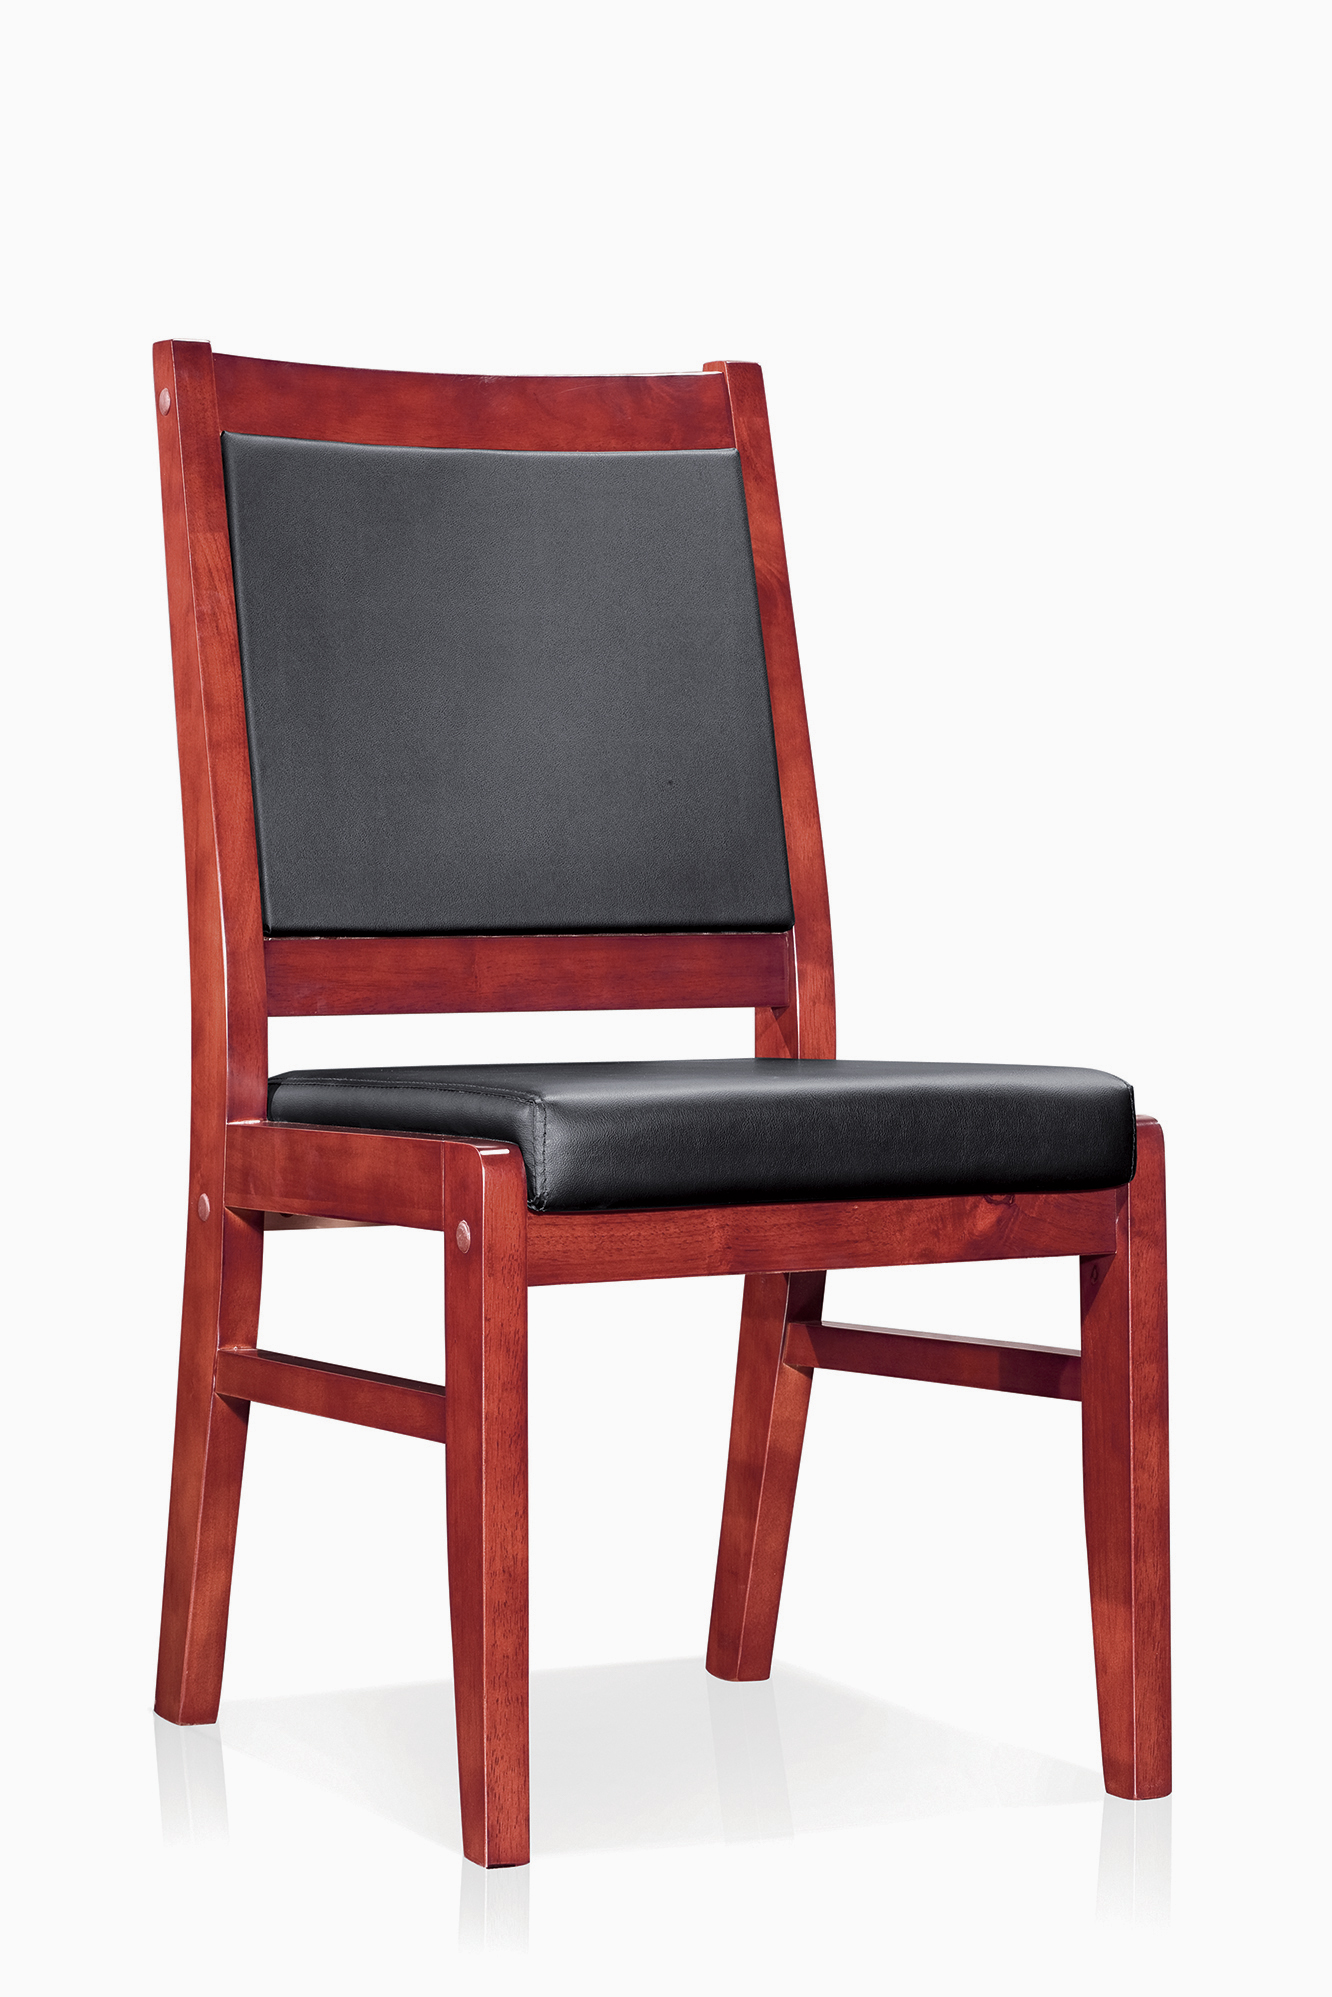 创意木质Lorica椅子设计_生活|风雅颂-优秀工业设计作品-优概念